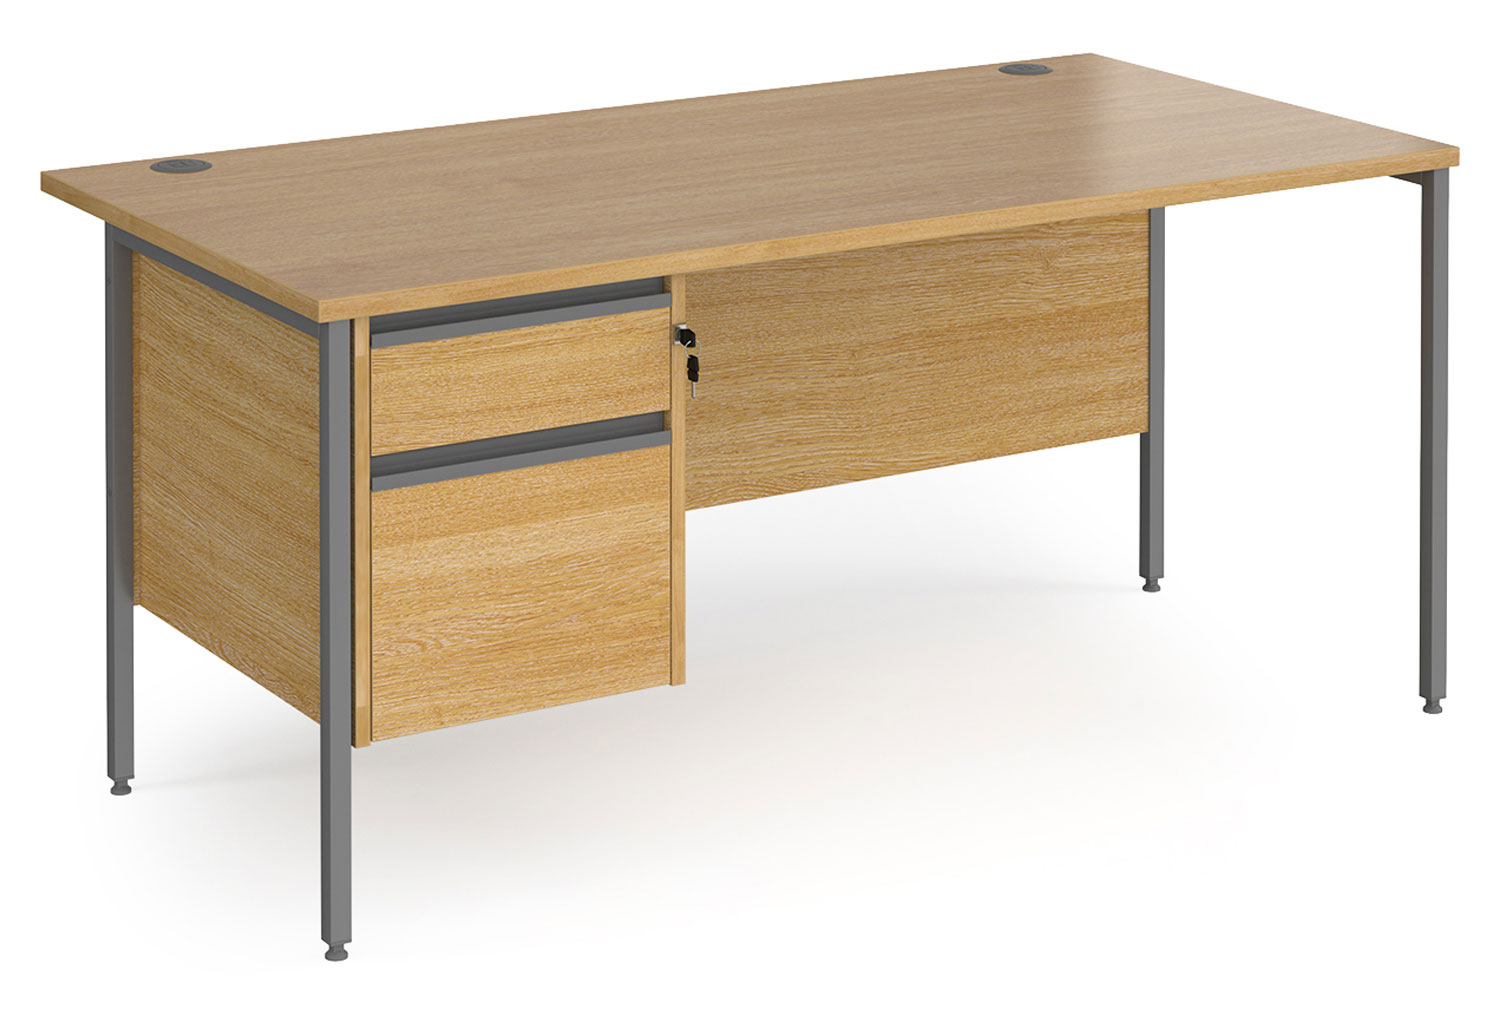 Value Line Classic+ Rectangular H-Leg Office Desk 2 Drawers (Graphite Leg), 160wx80dx73h (cm), Oak, Fully Installed